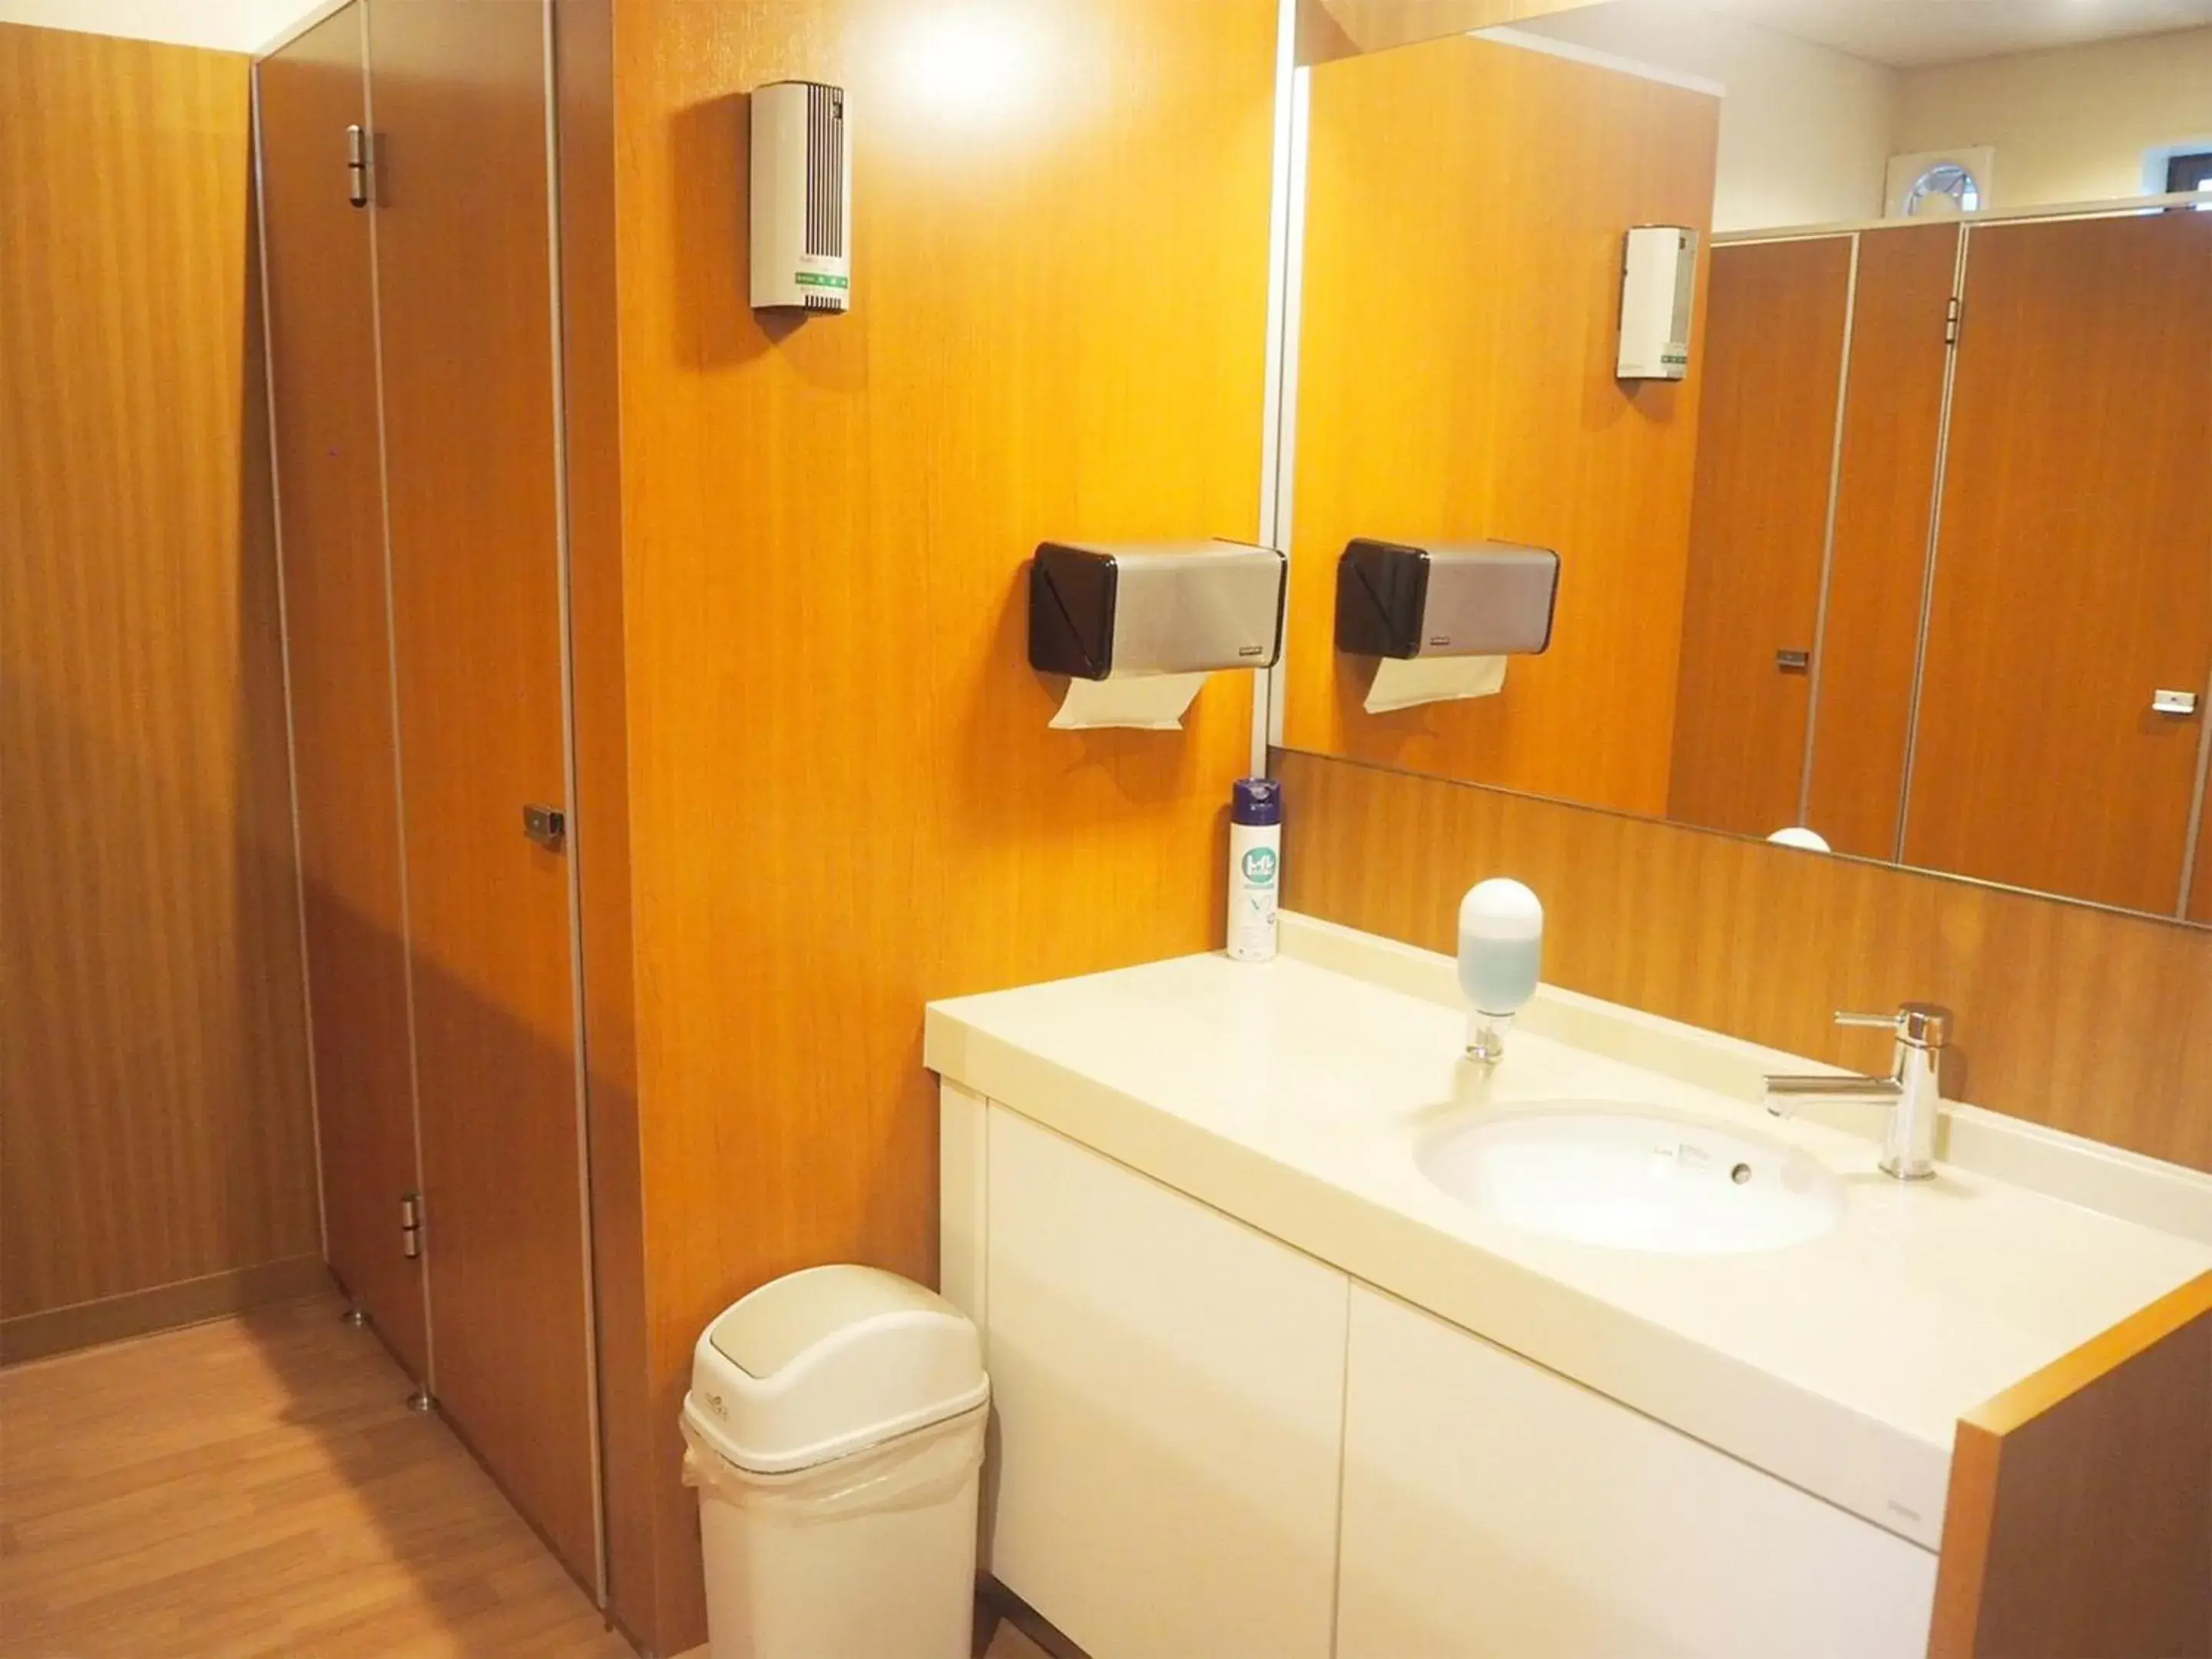 Toilet, Bathroom in Oyado Hachibei